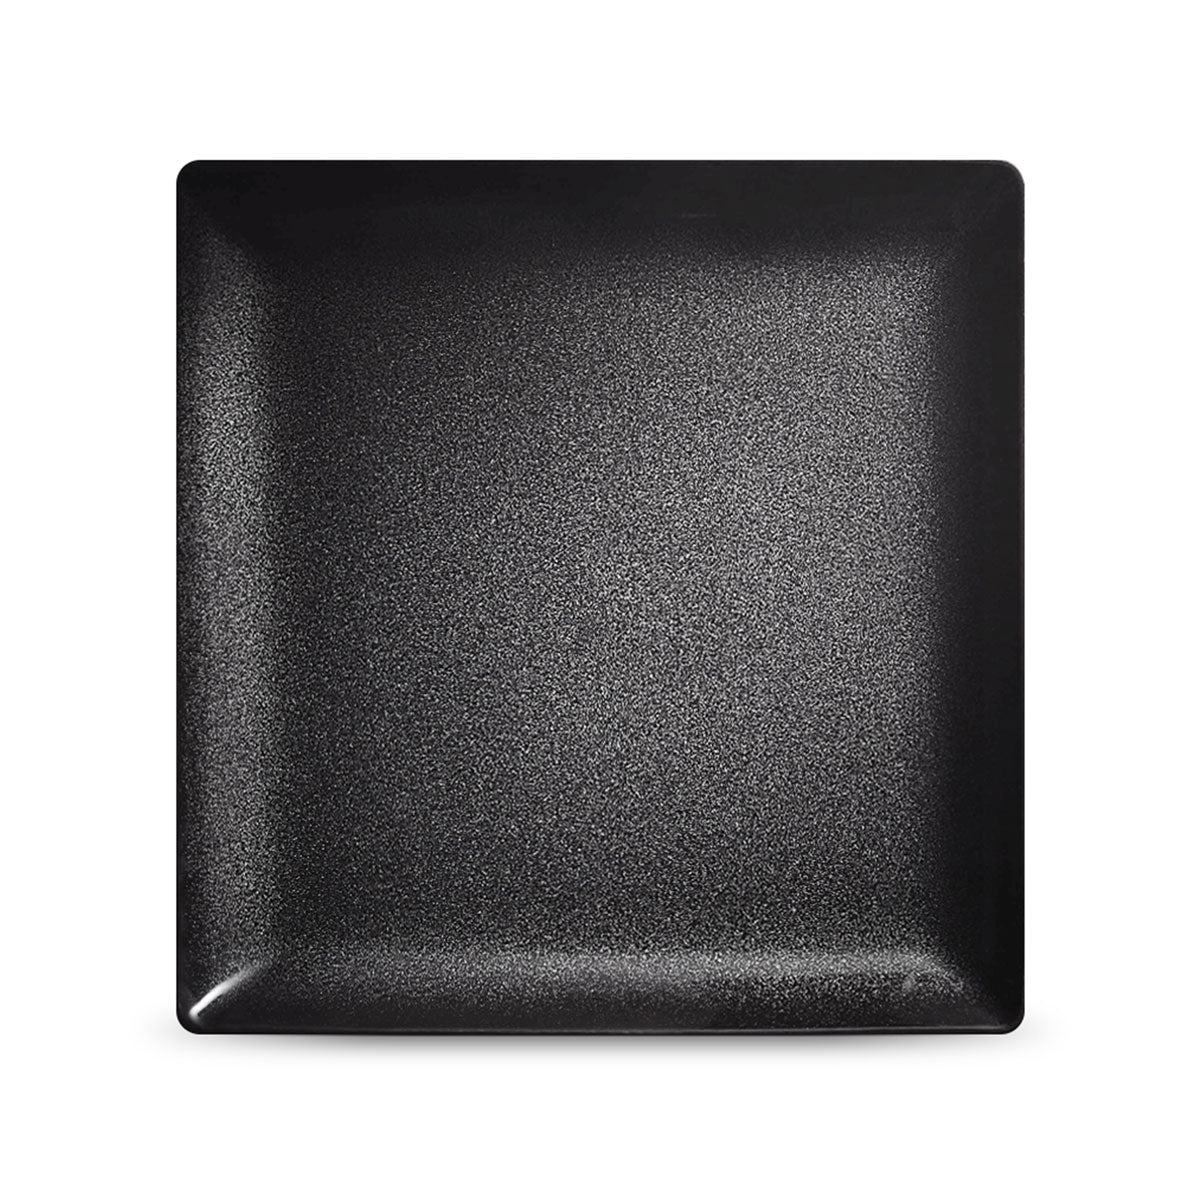 NOIR PAILLETÉ - Square plate 27 cm